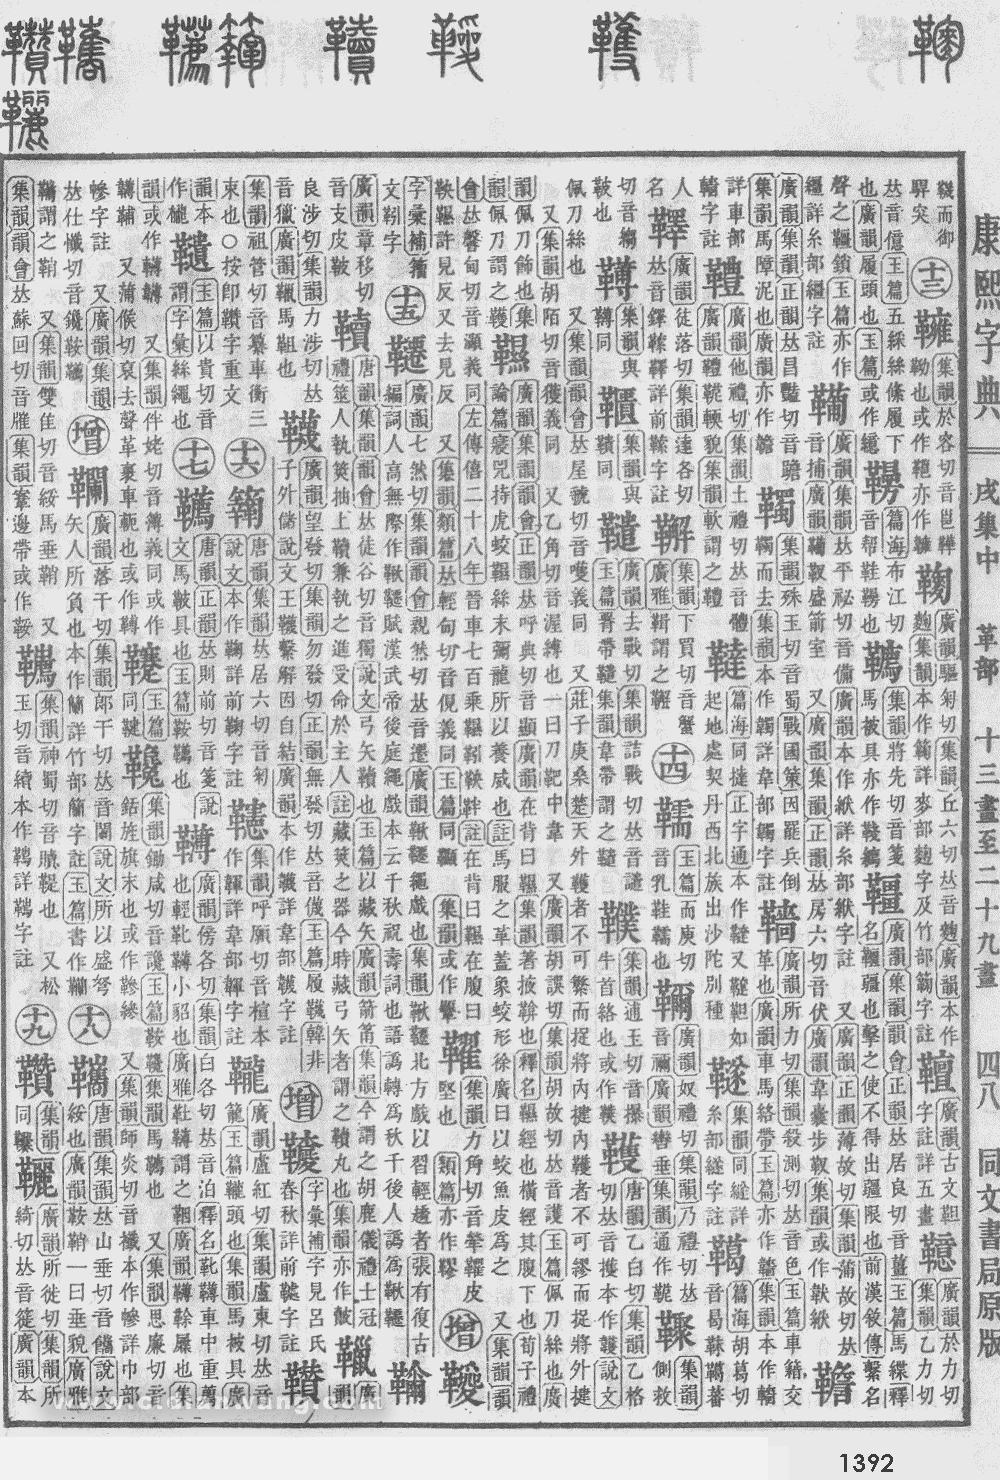 康熙字典掃描版第1392頁